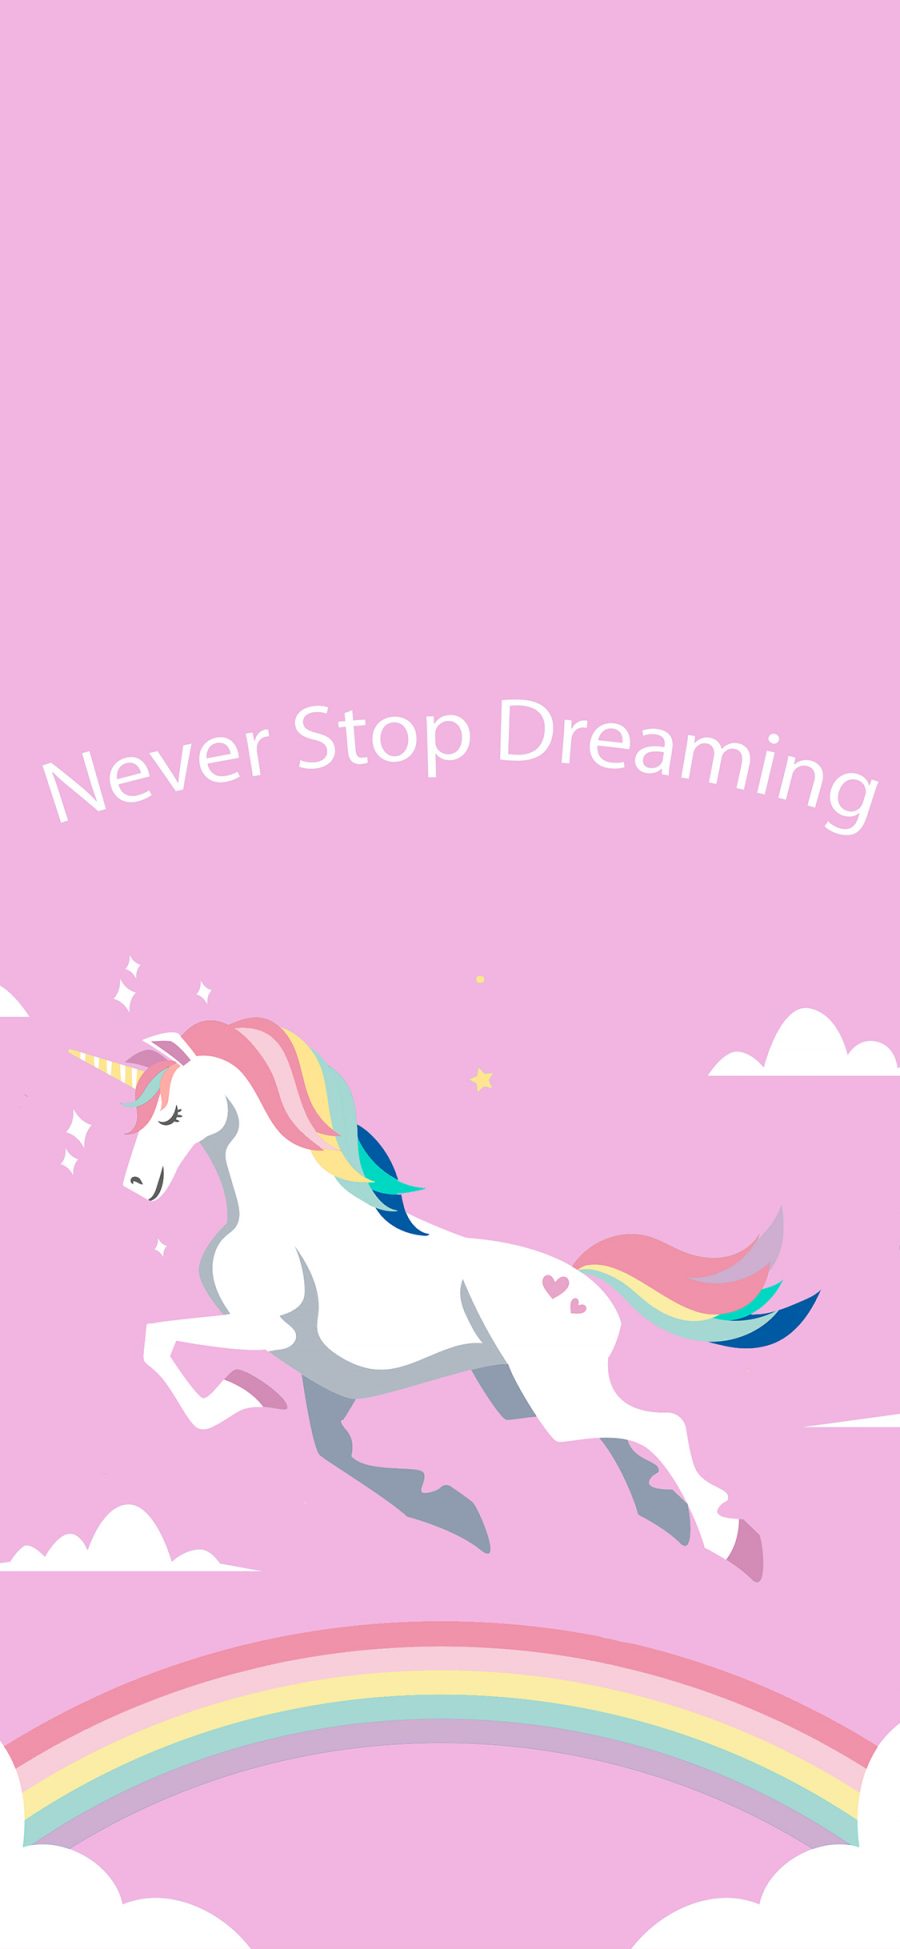 [2436×1125]独角兽 粉色 卡通 星星 彩虹 从不停止梦想 苹果手机动漫壁纸图片